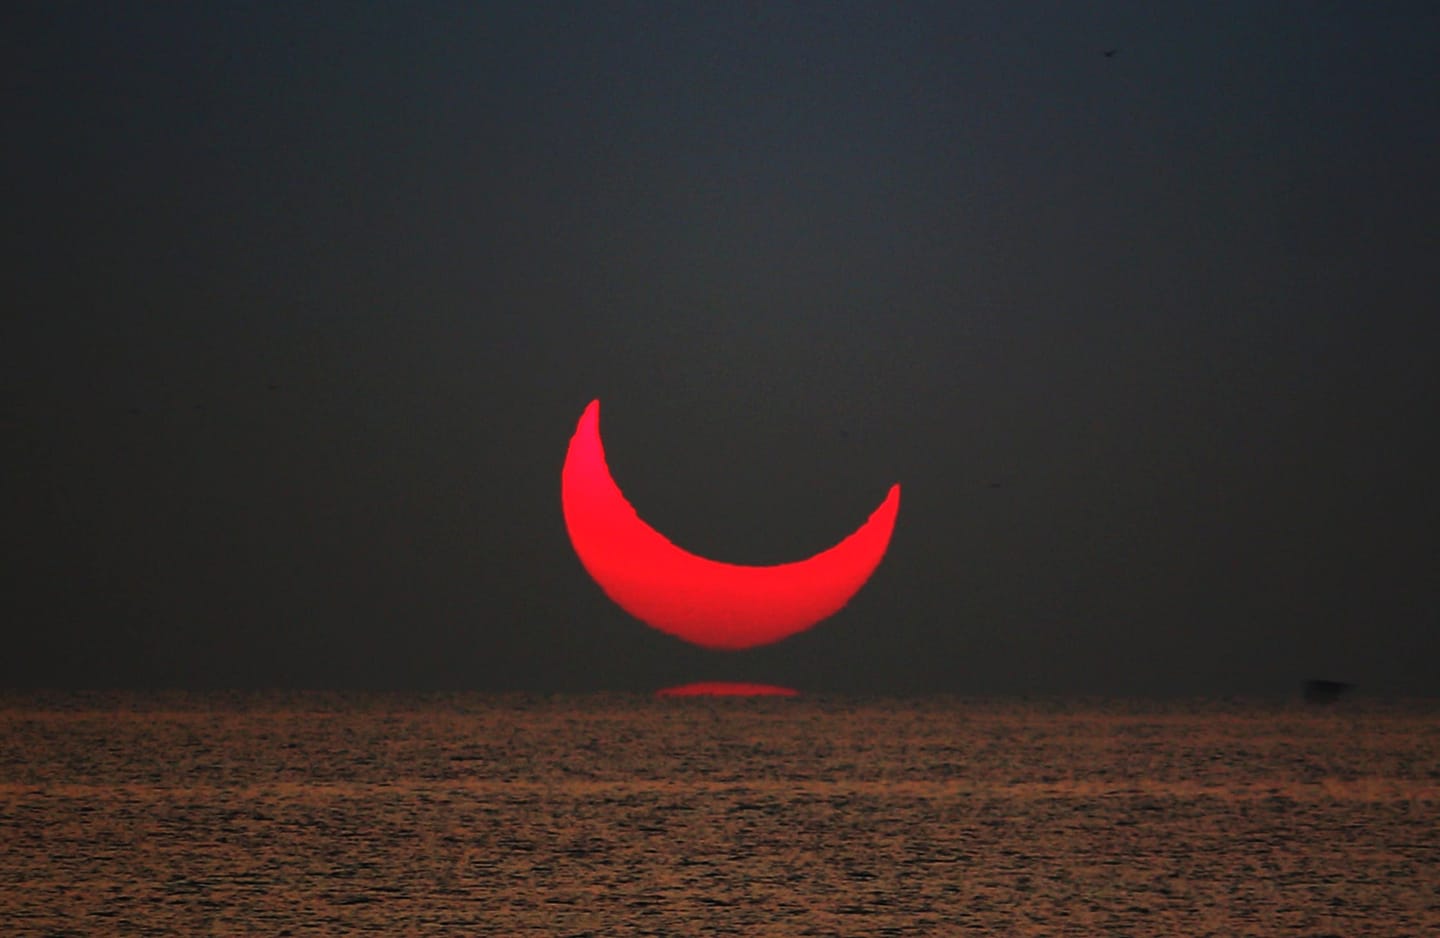 Solar eclipse and inferior mirage in Qatar